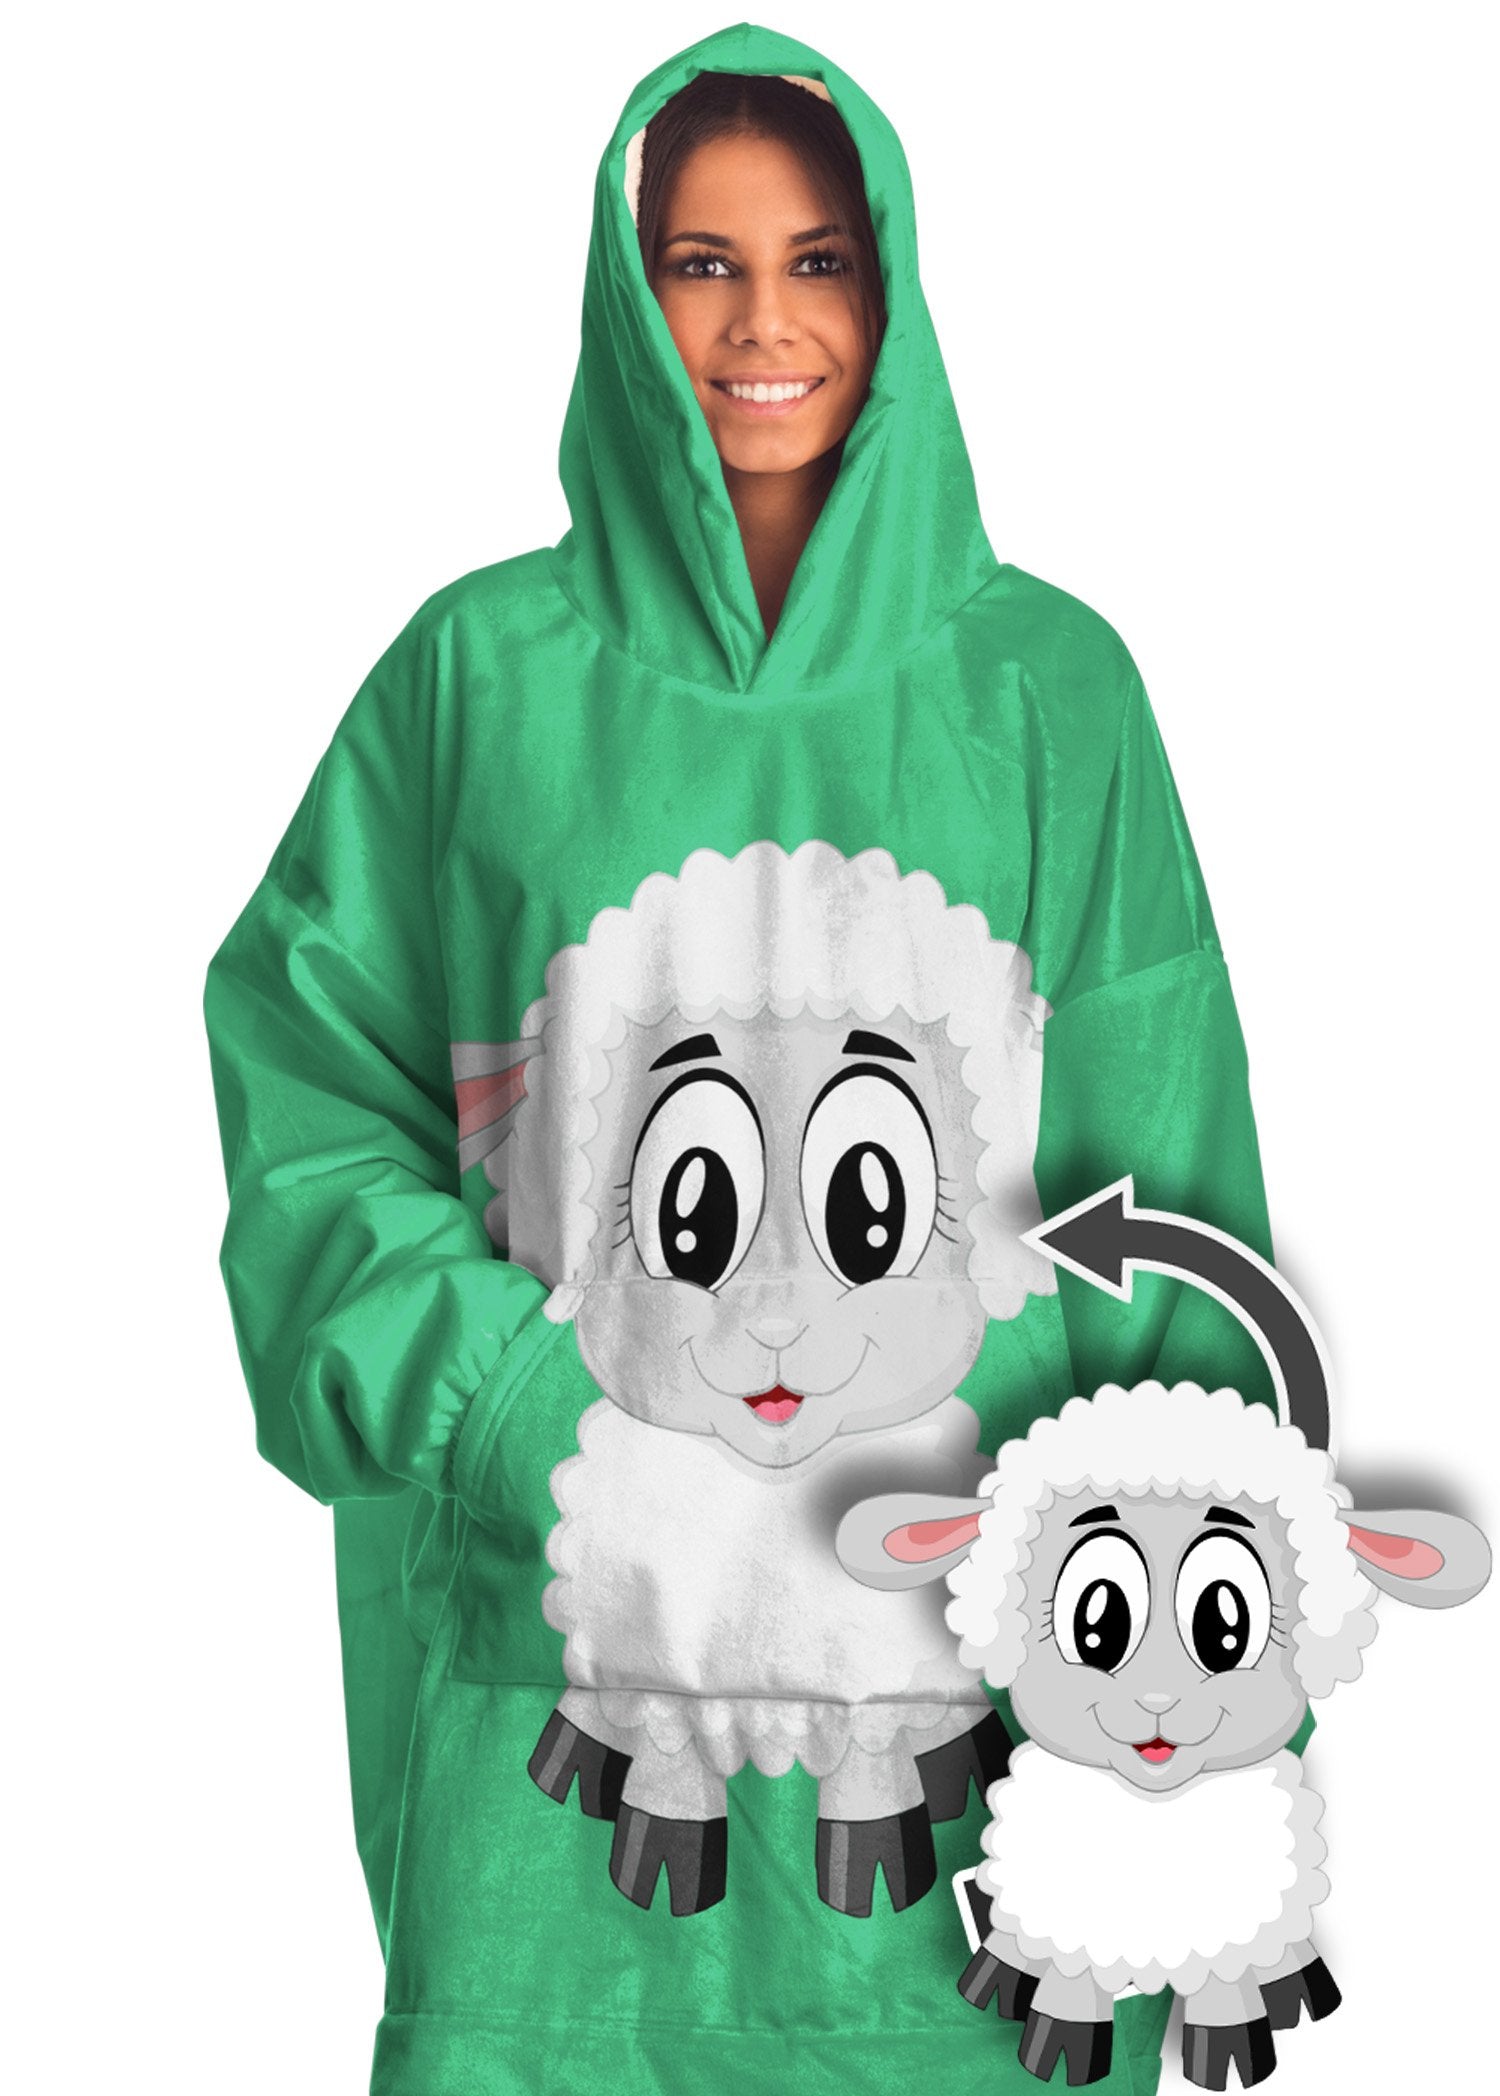 Bulk Order Custom Hoodie Blanket Logo (Disp. Price 30-99 items 'Plan Ahead' Service) (10+ order min)